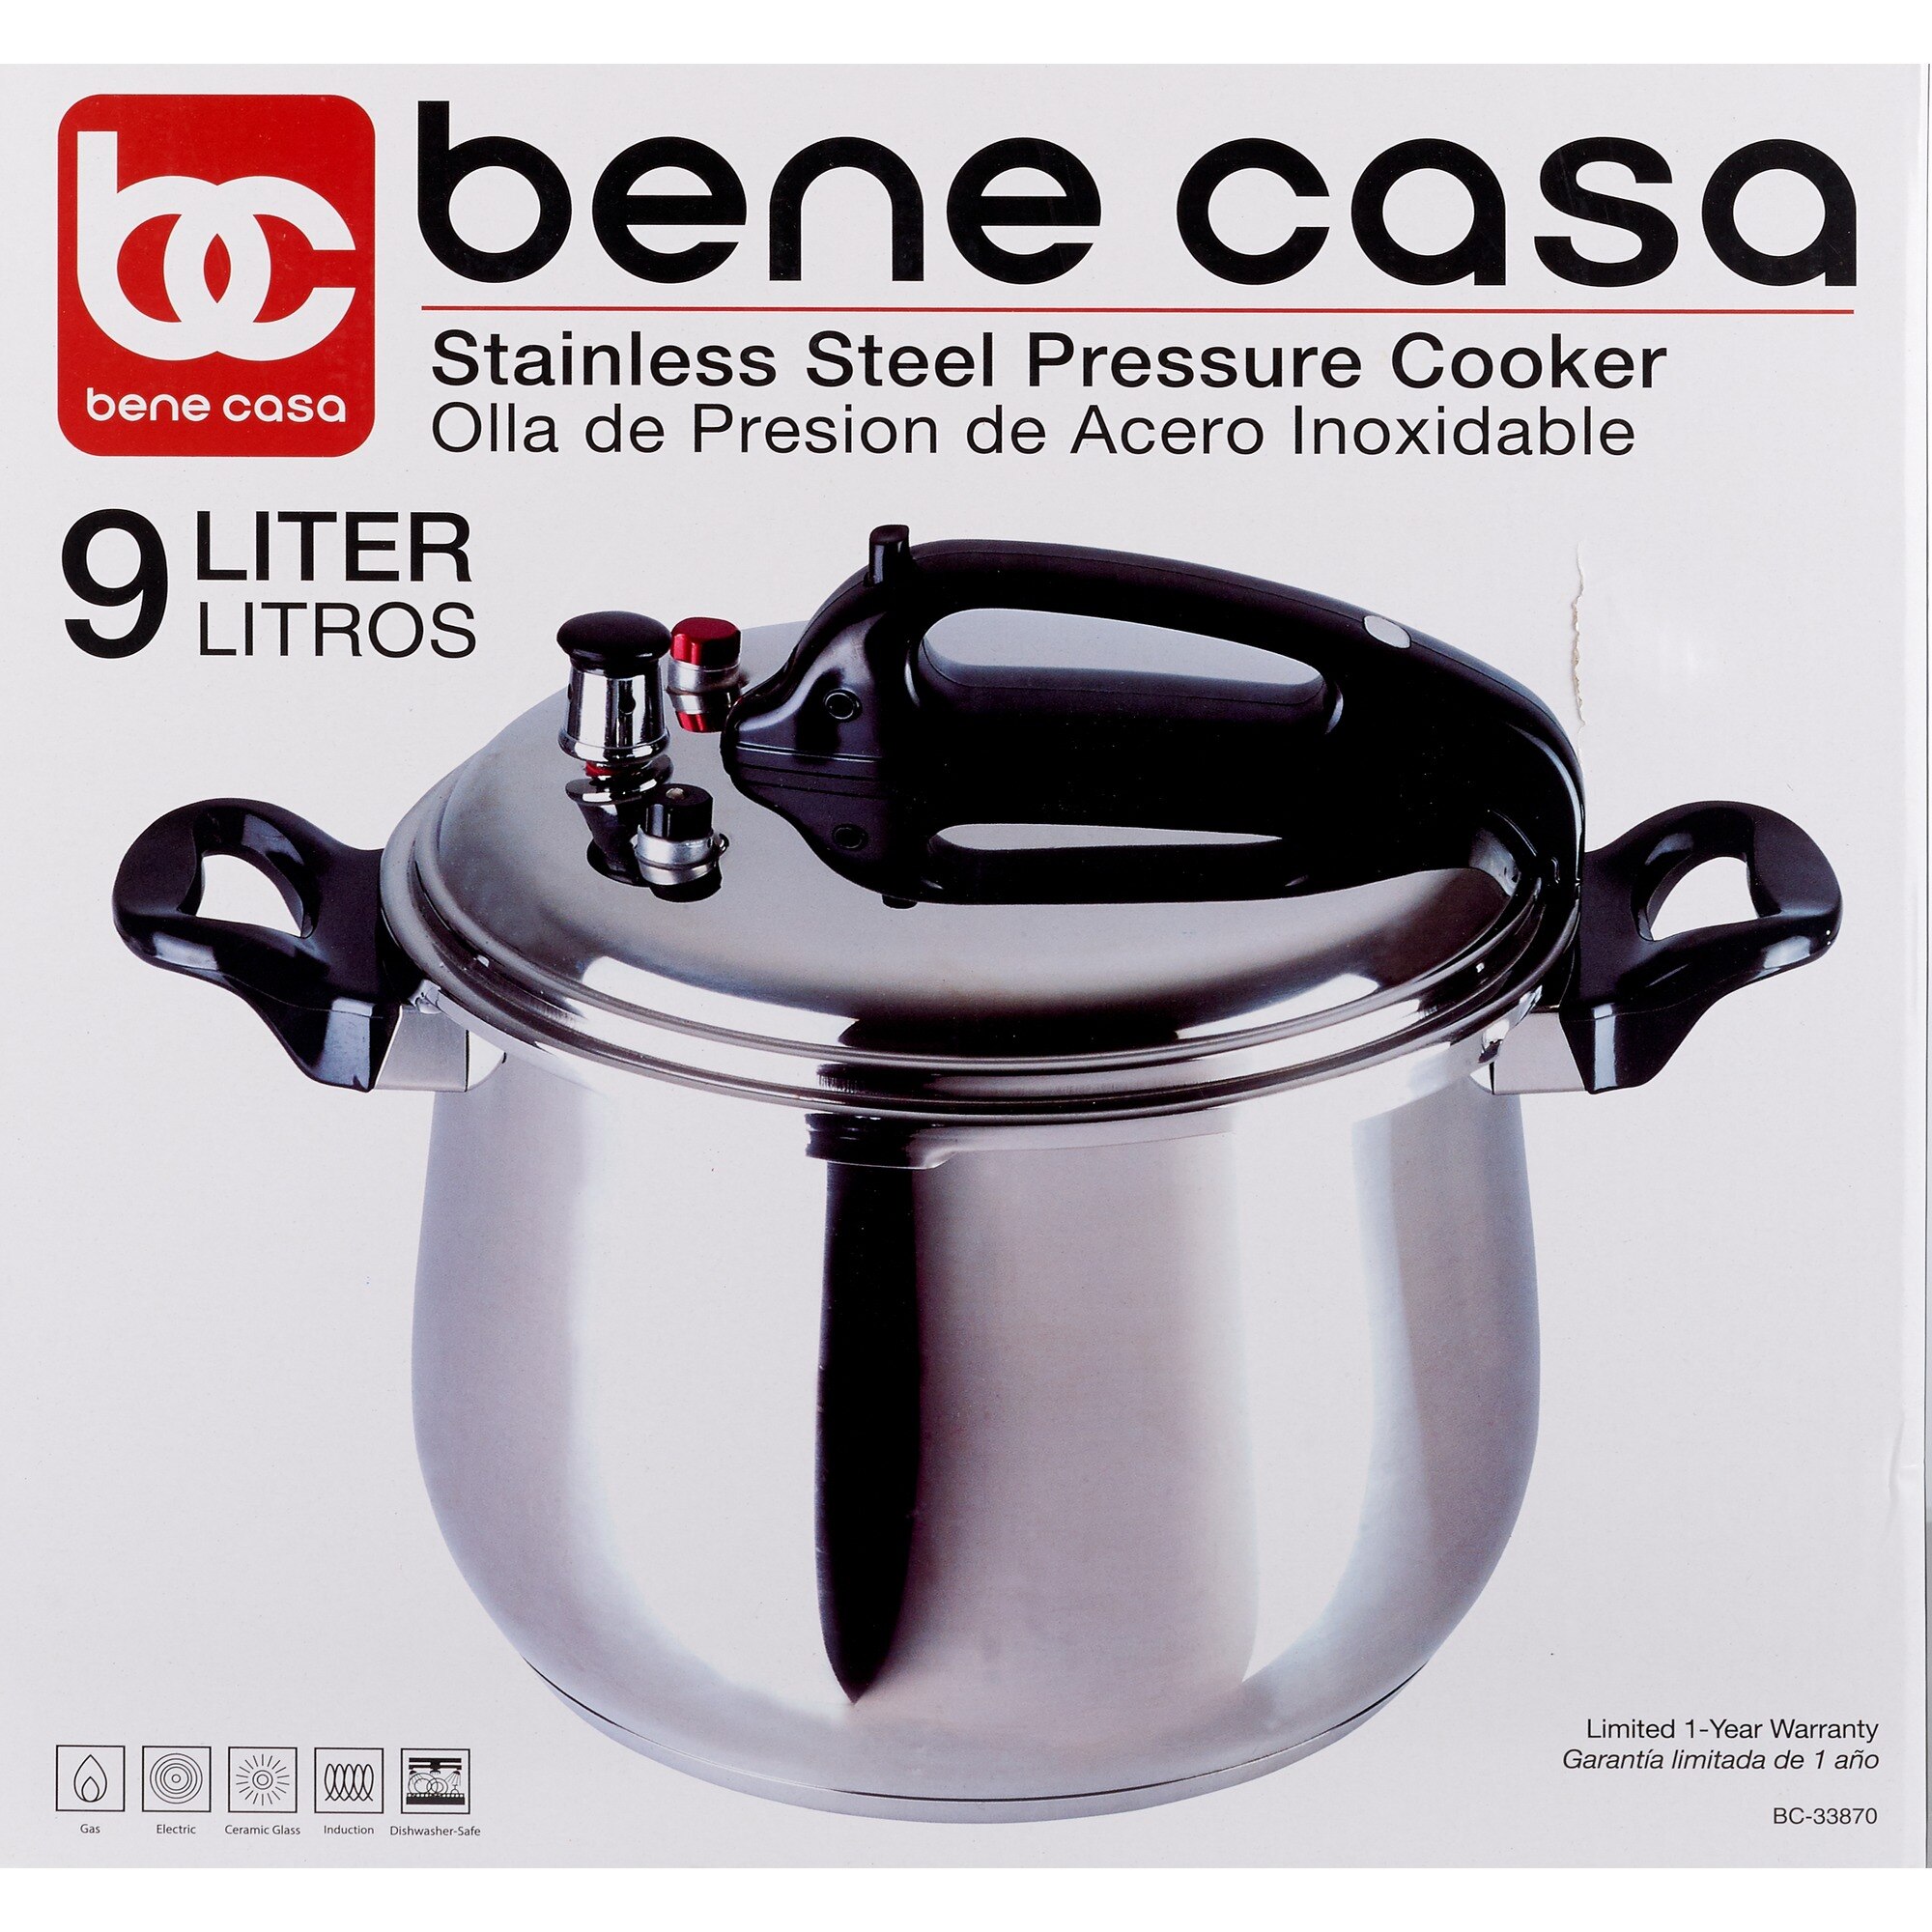 Bene Casa Stainless-Steel, 5.3-quart Pressure Cooker, 5-liter Capacity.  Olla de Presion.